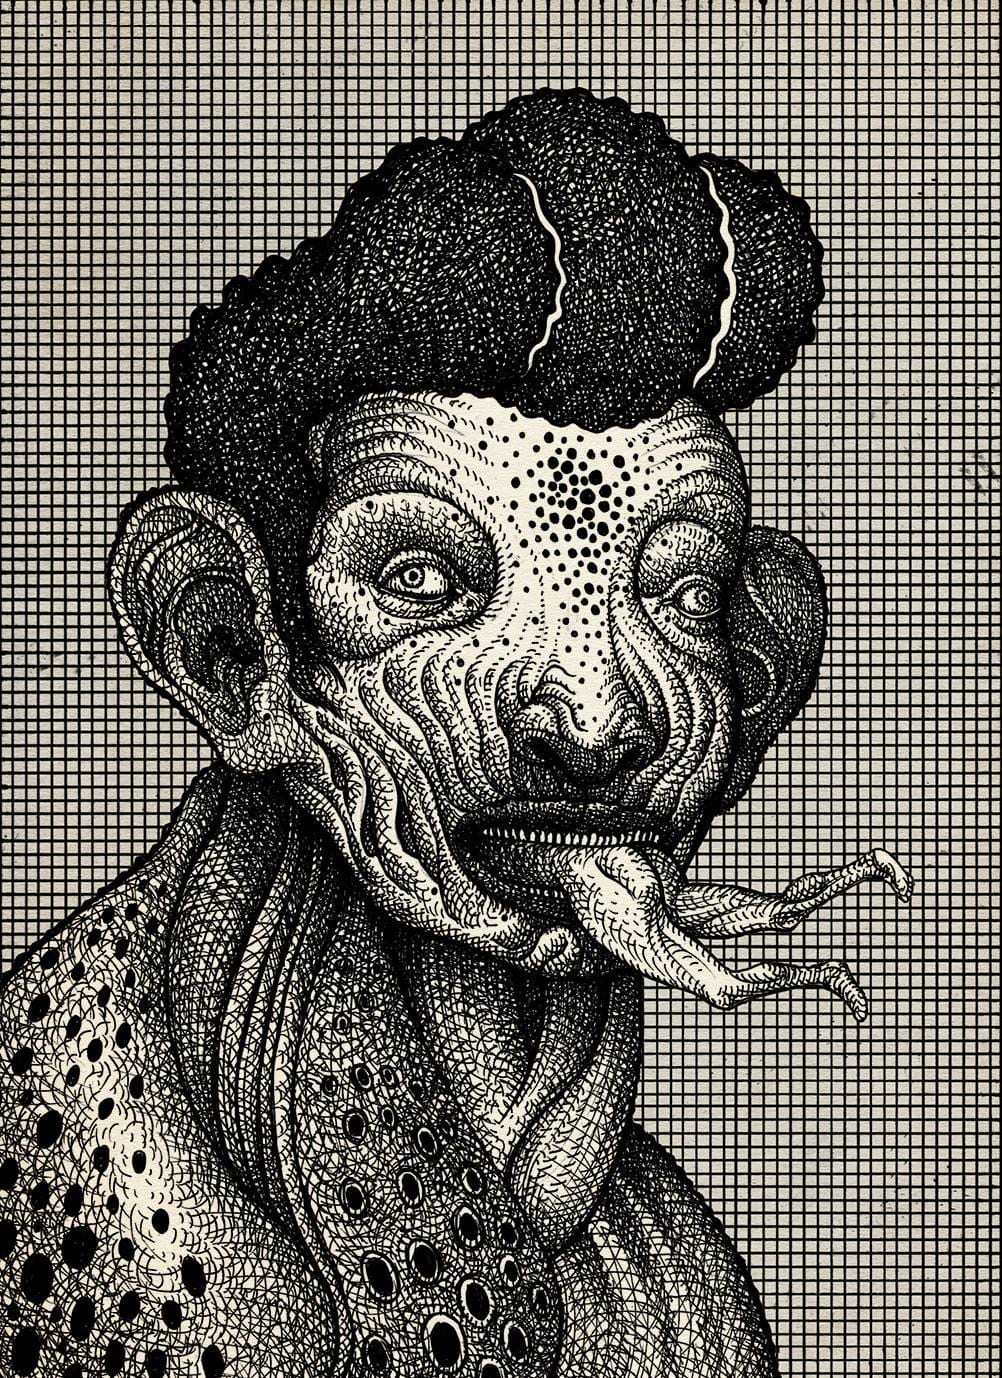 Cette illustration représente un homme avec des yeux de serpents et une l'impression d'une langue de serpent qui est en fait le bas de corps de quelqu'un que l'homme est en train de manger.